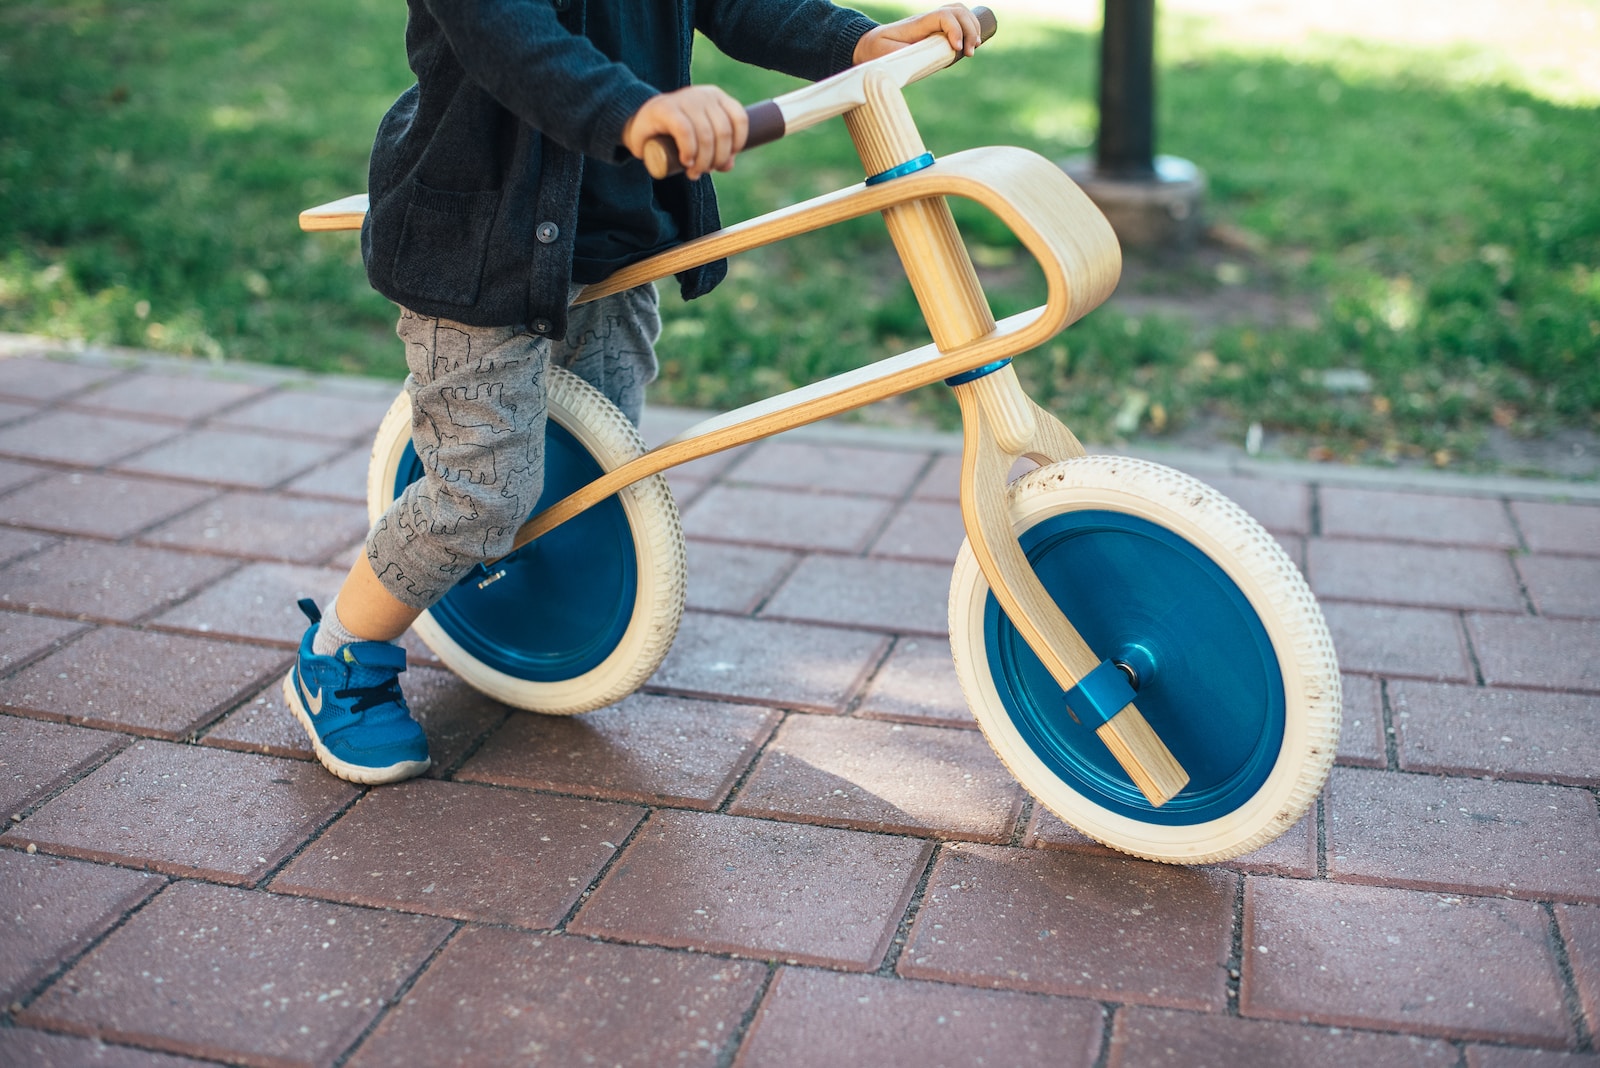 toddler riding balance bike